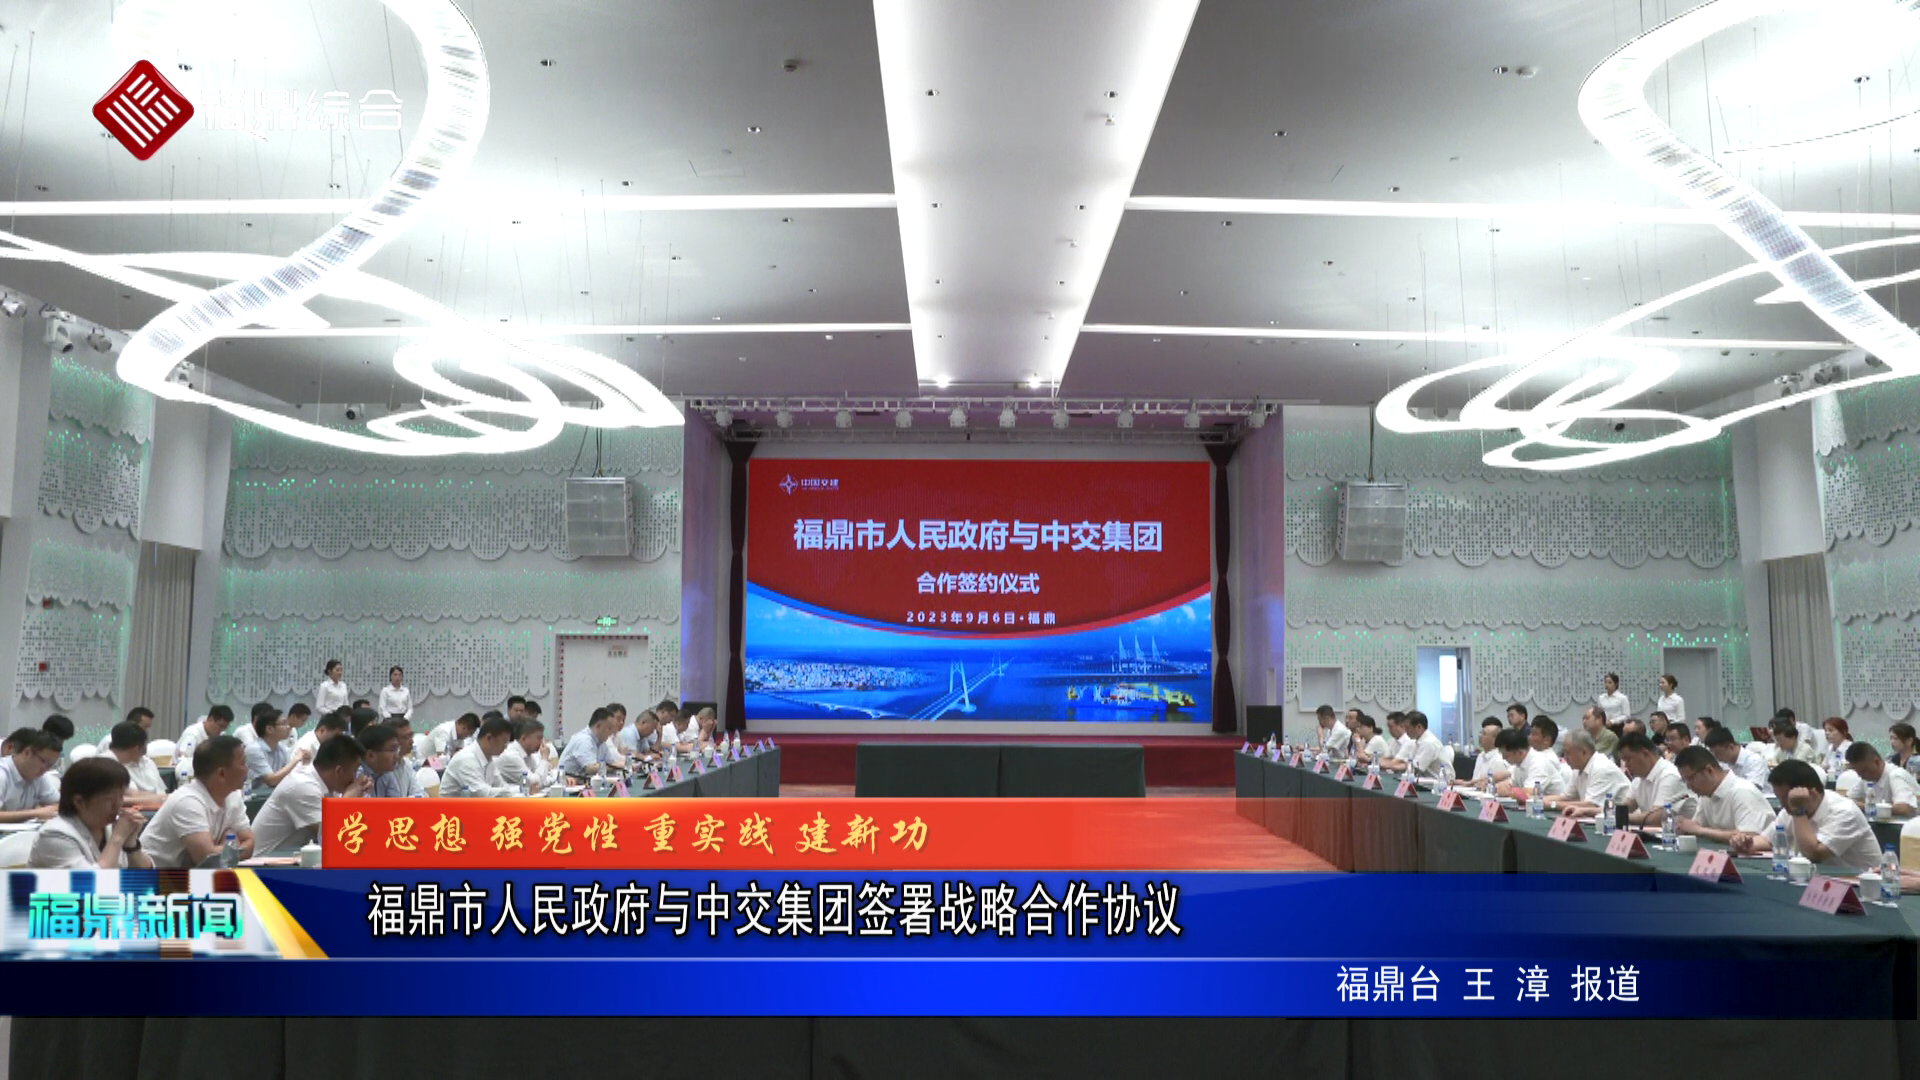 福鼎市人民政府与中交集团签署战略合作协议